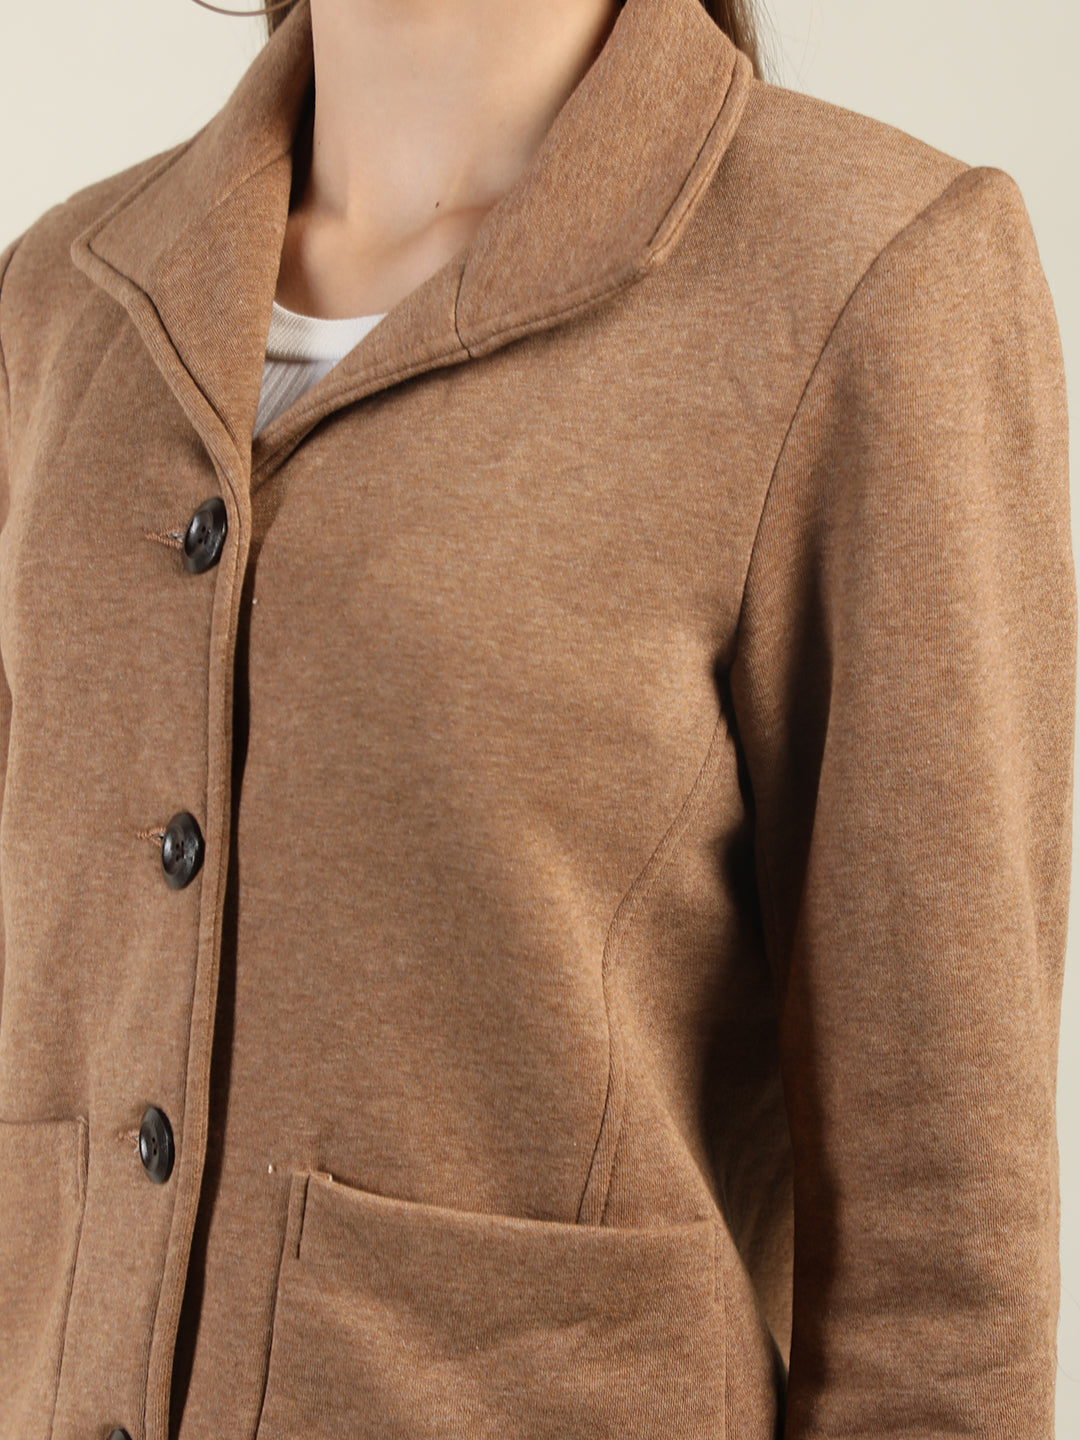 Women Brown Solid Fleece Overcoat Winter Coat